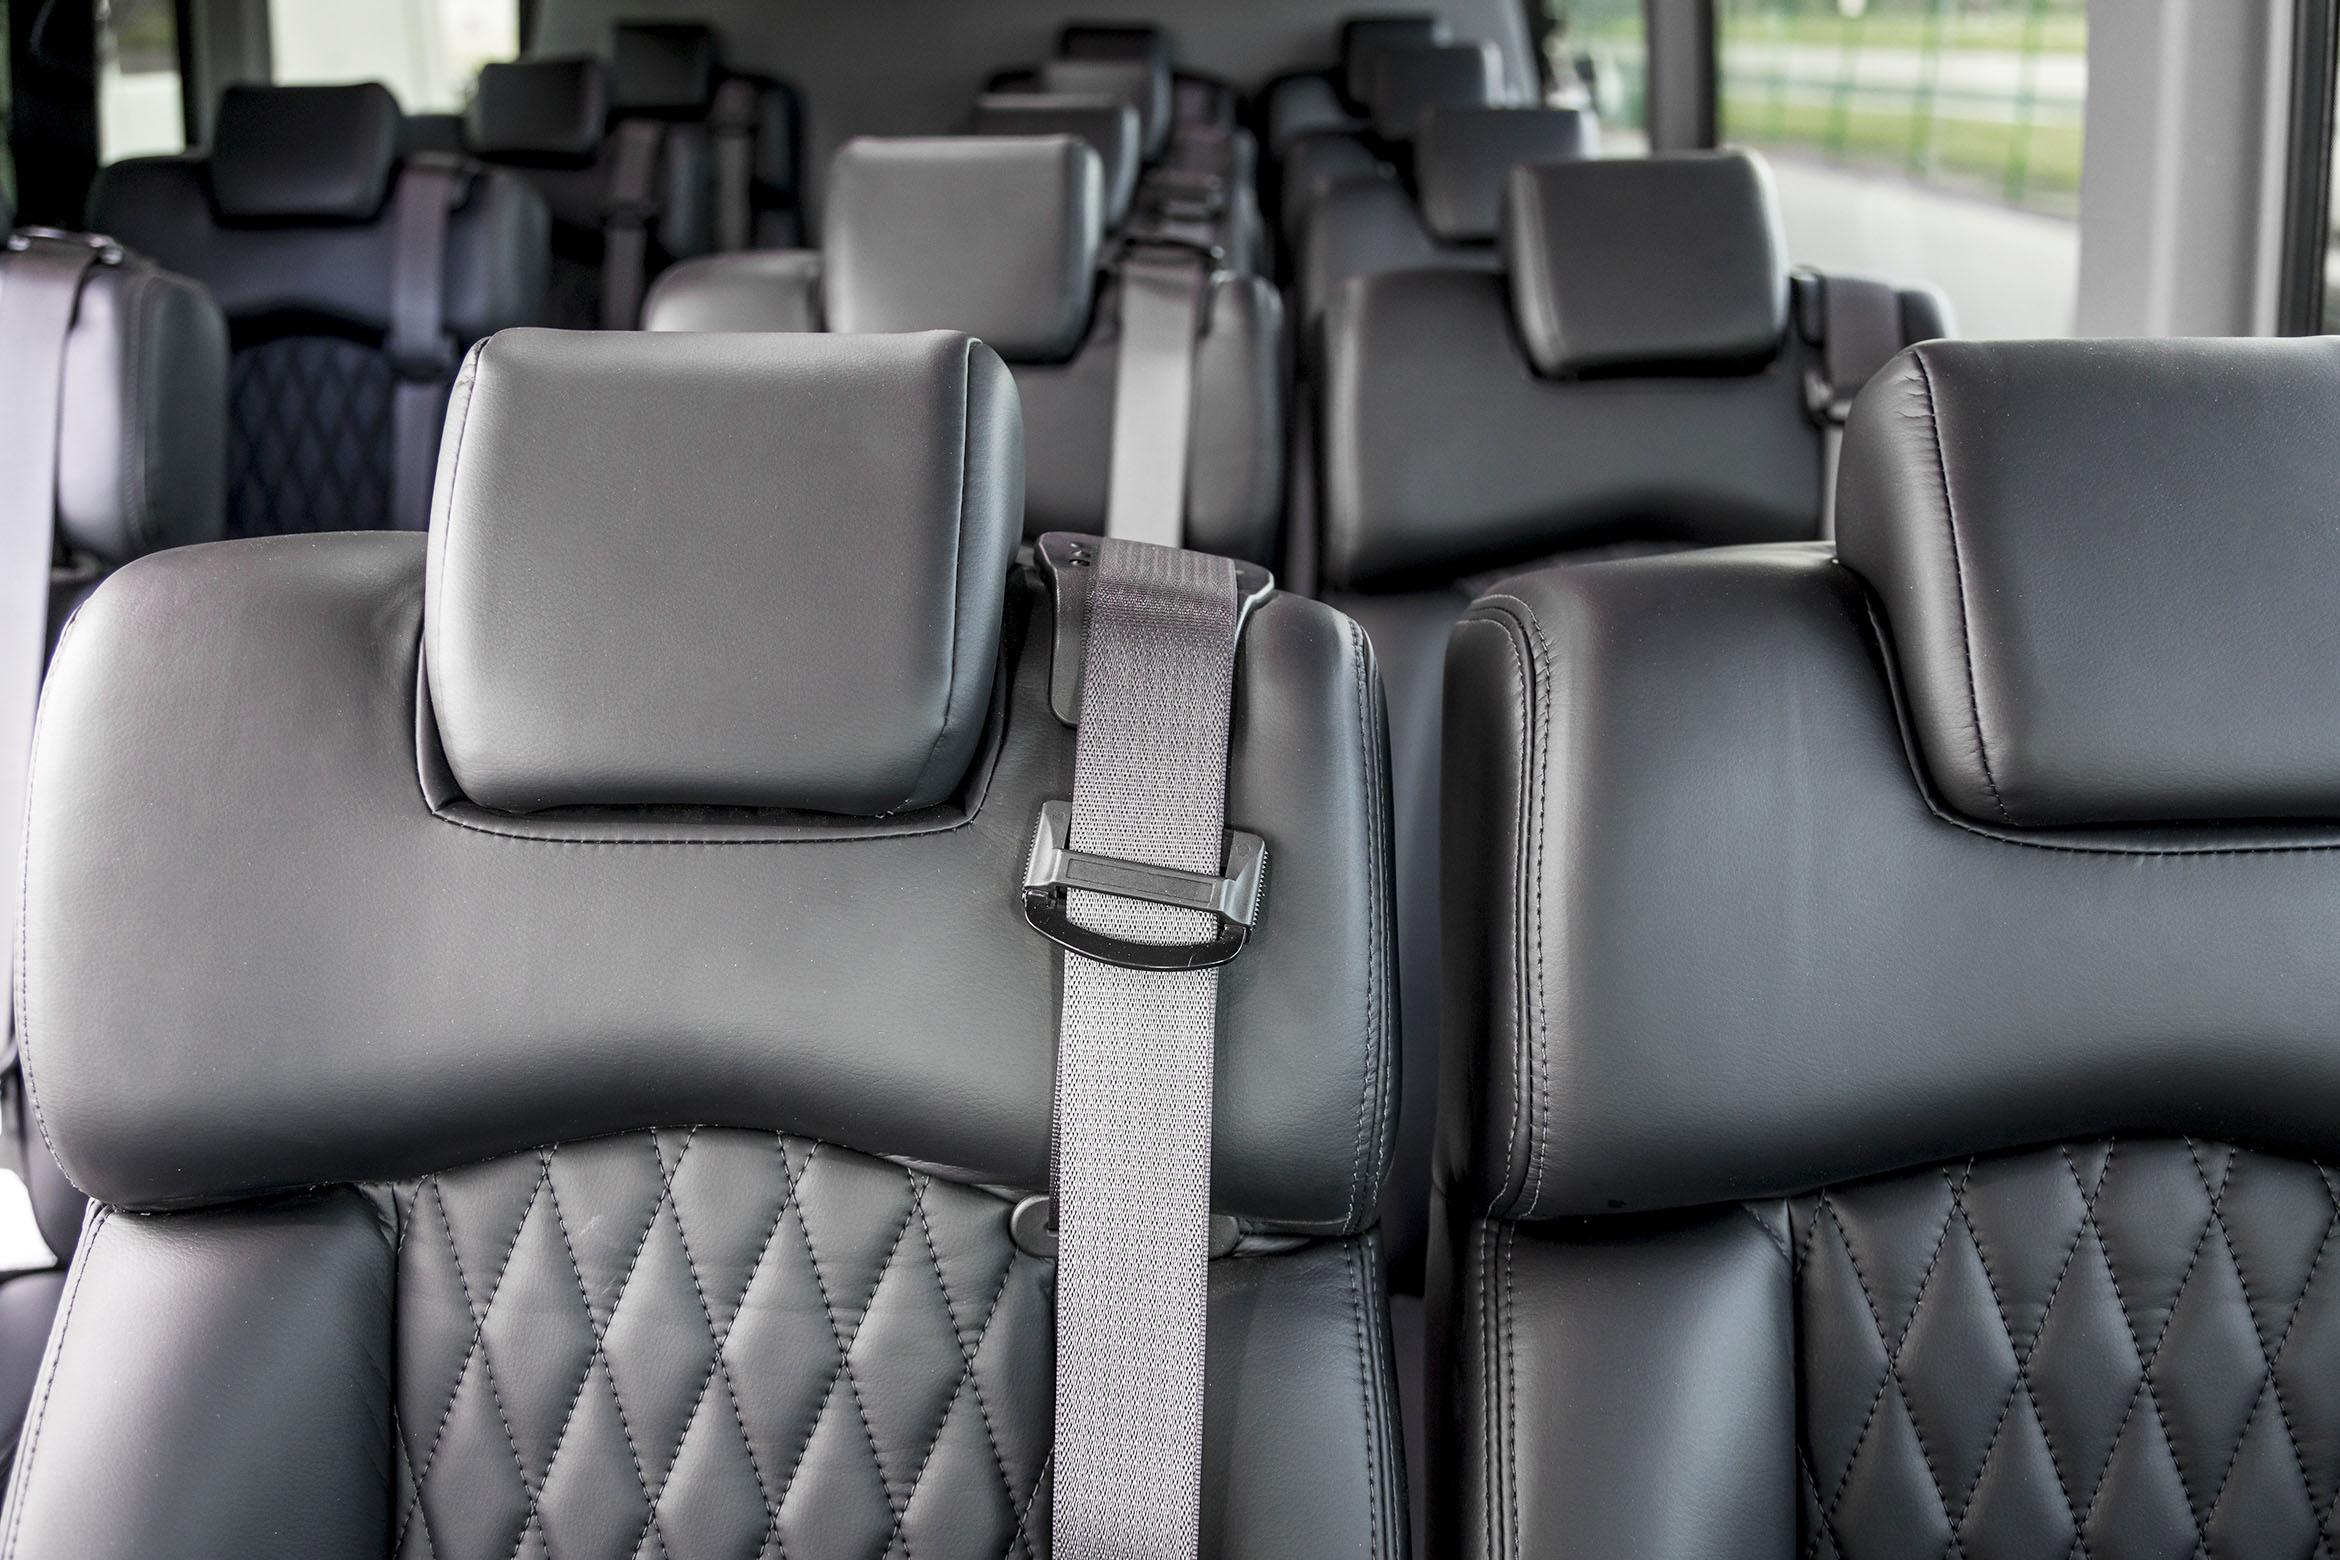 Bespoke Minibus specializes in Mercedes-Benz Sprinter van shuttle minibus conversions.